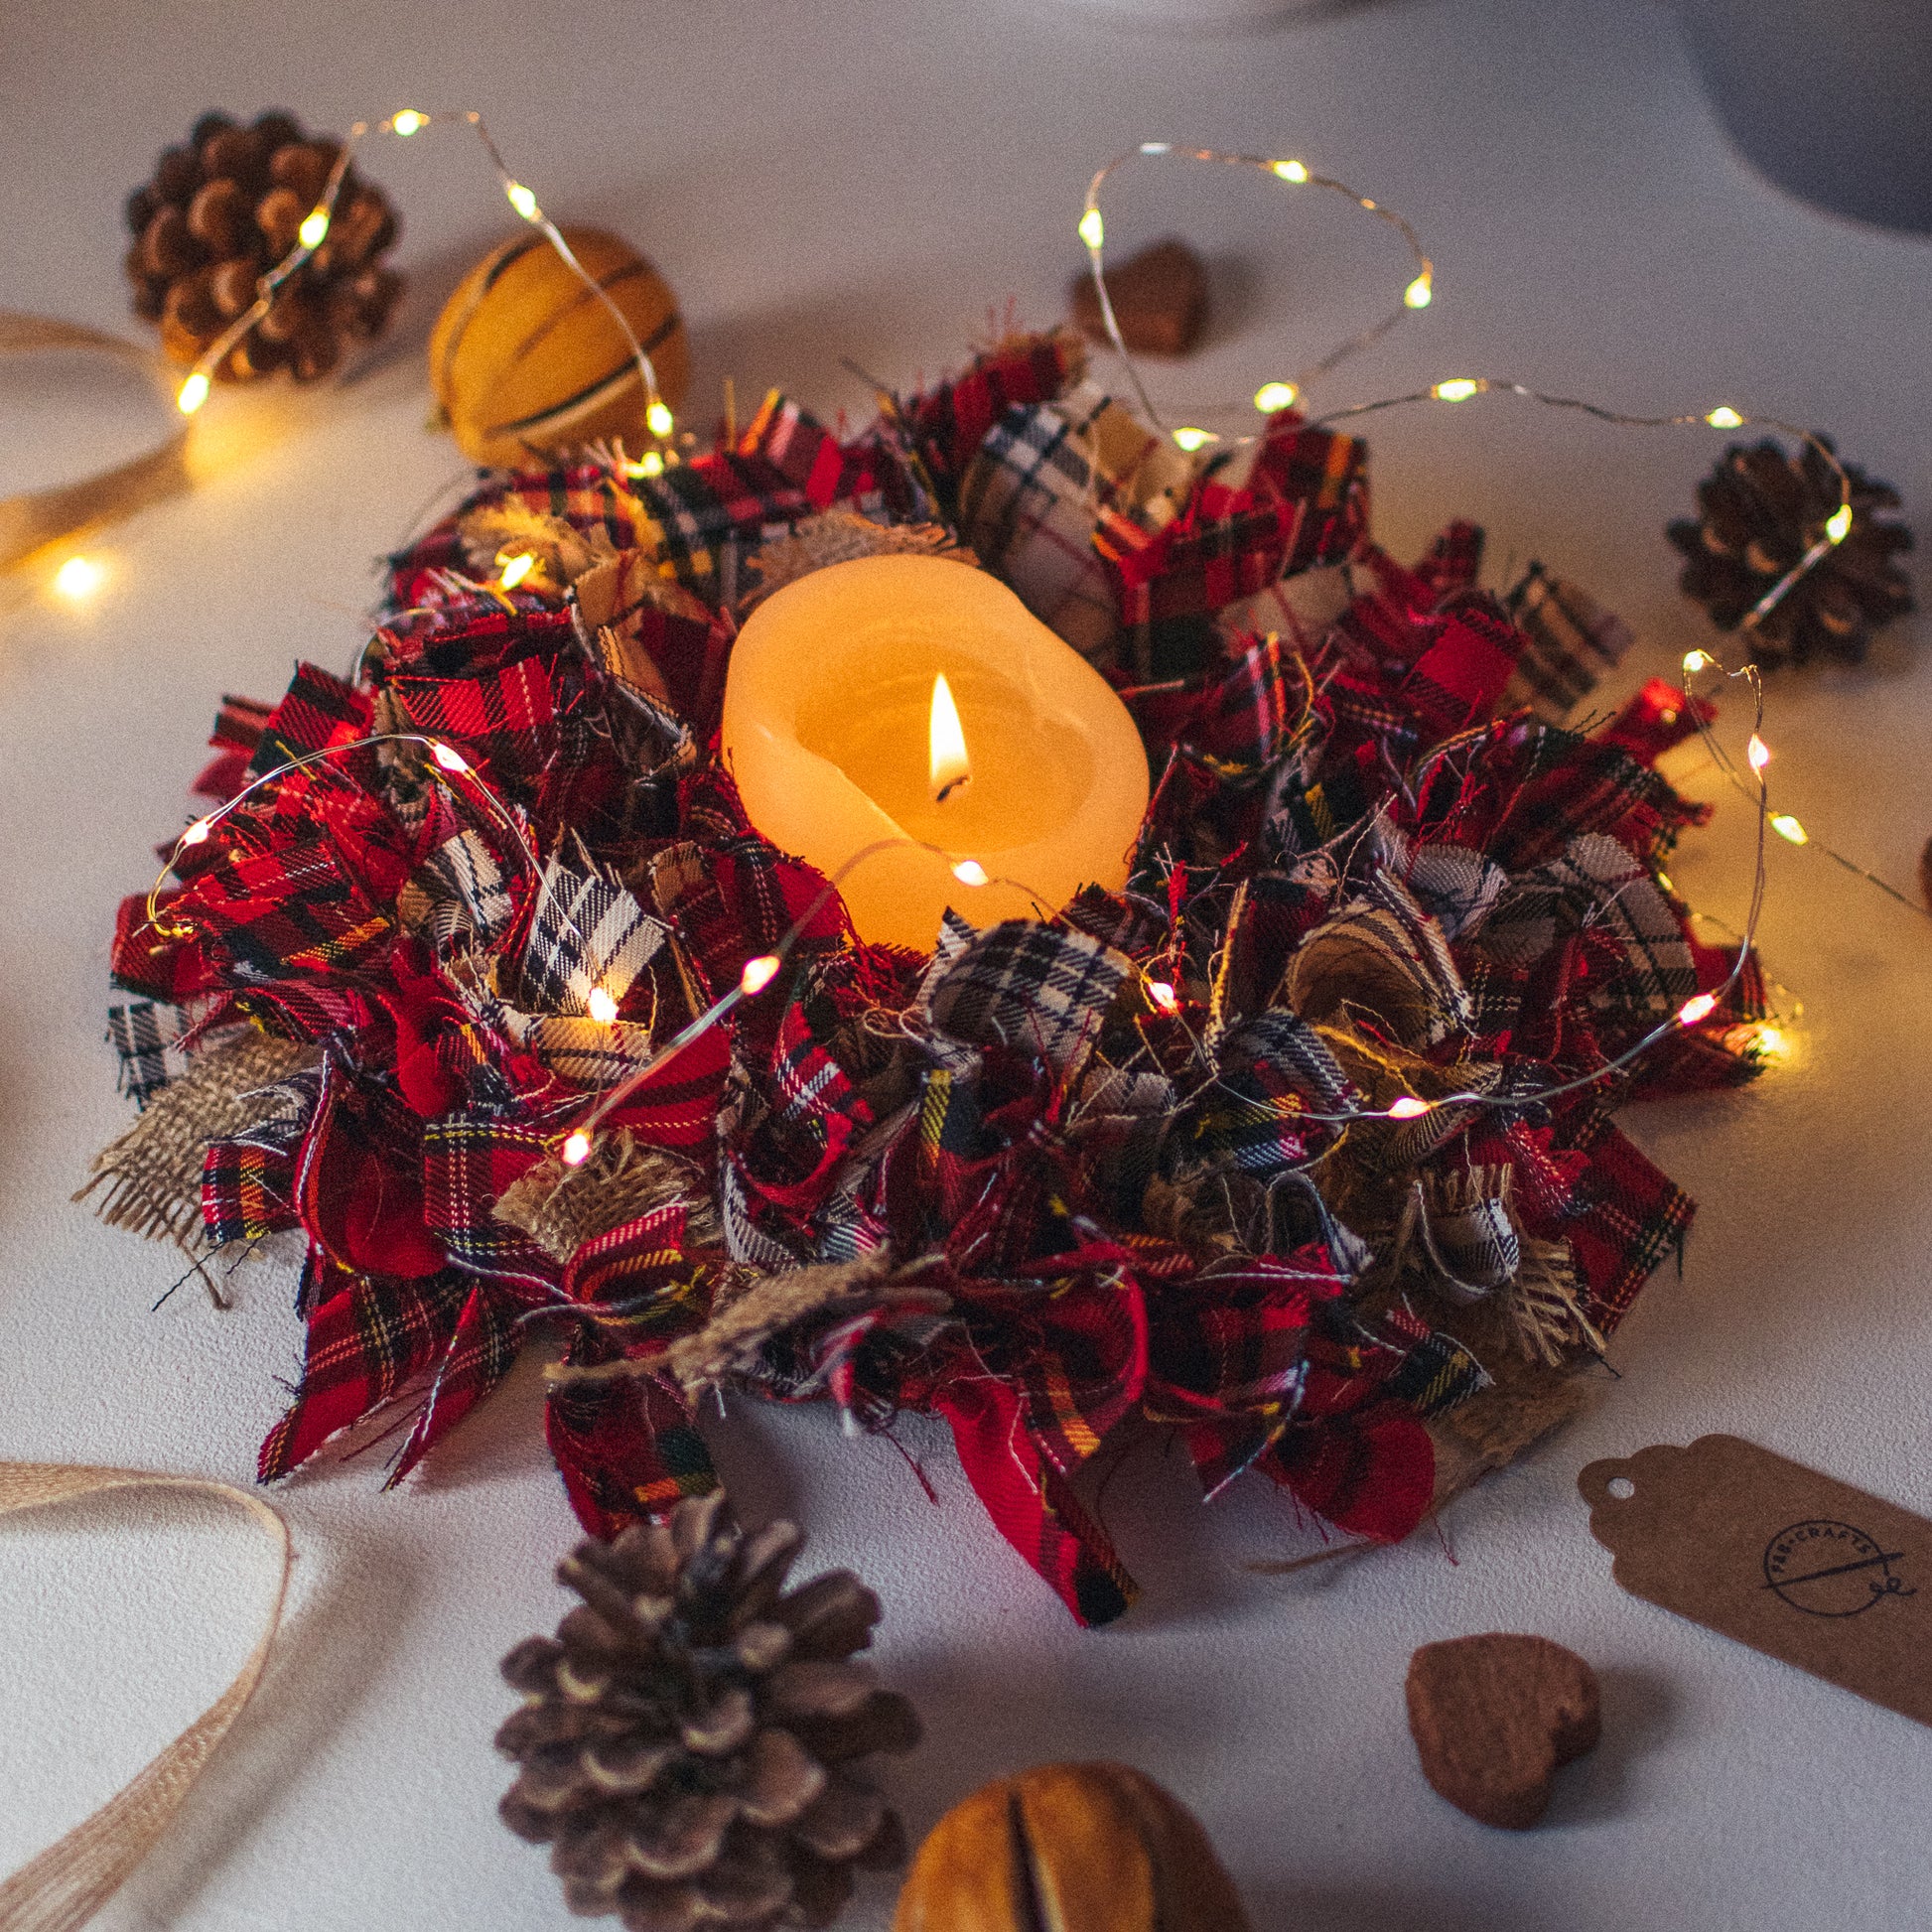 Red Tartan Table Centre Piece - Rag Wreath Christmas Home Decor Shabby Chic